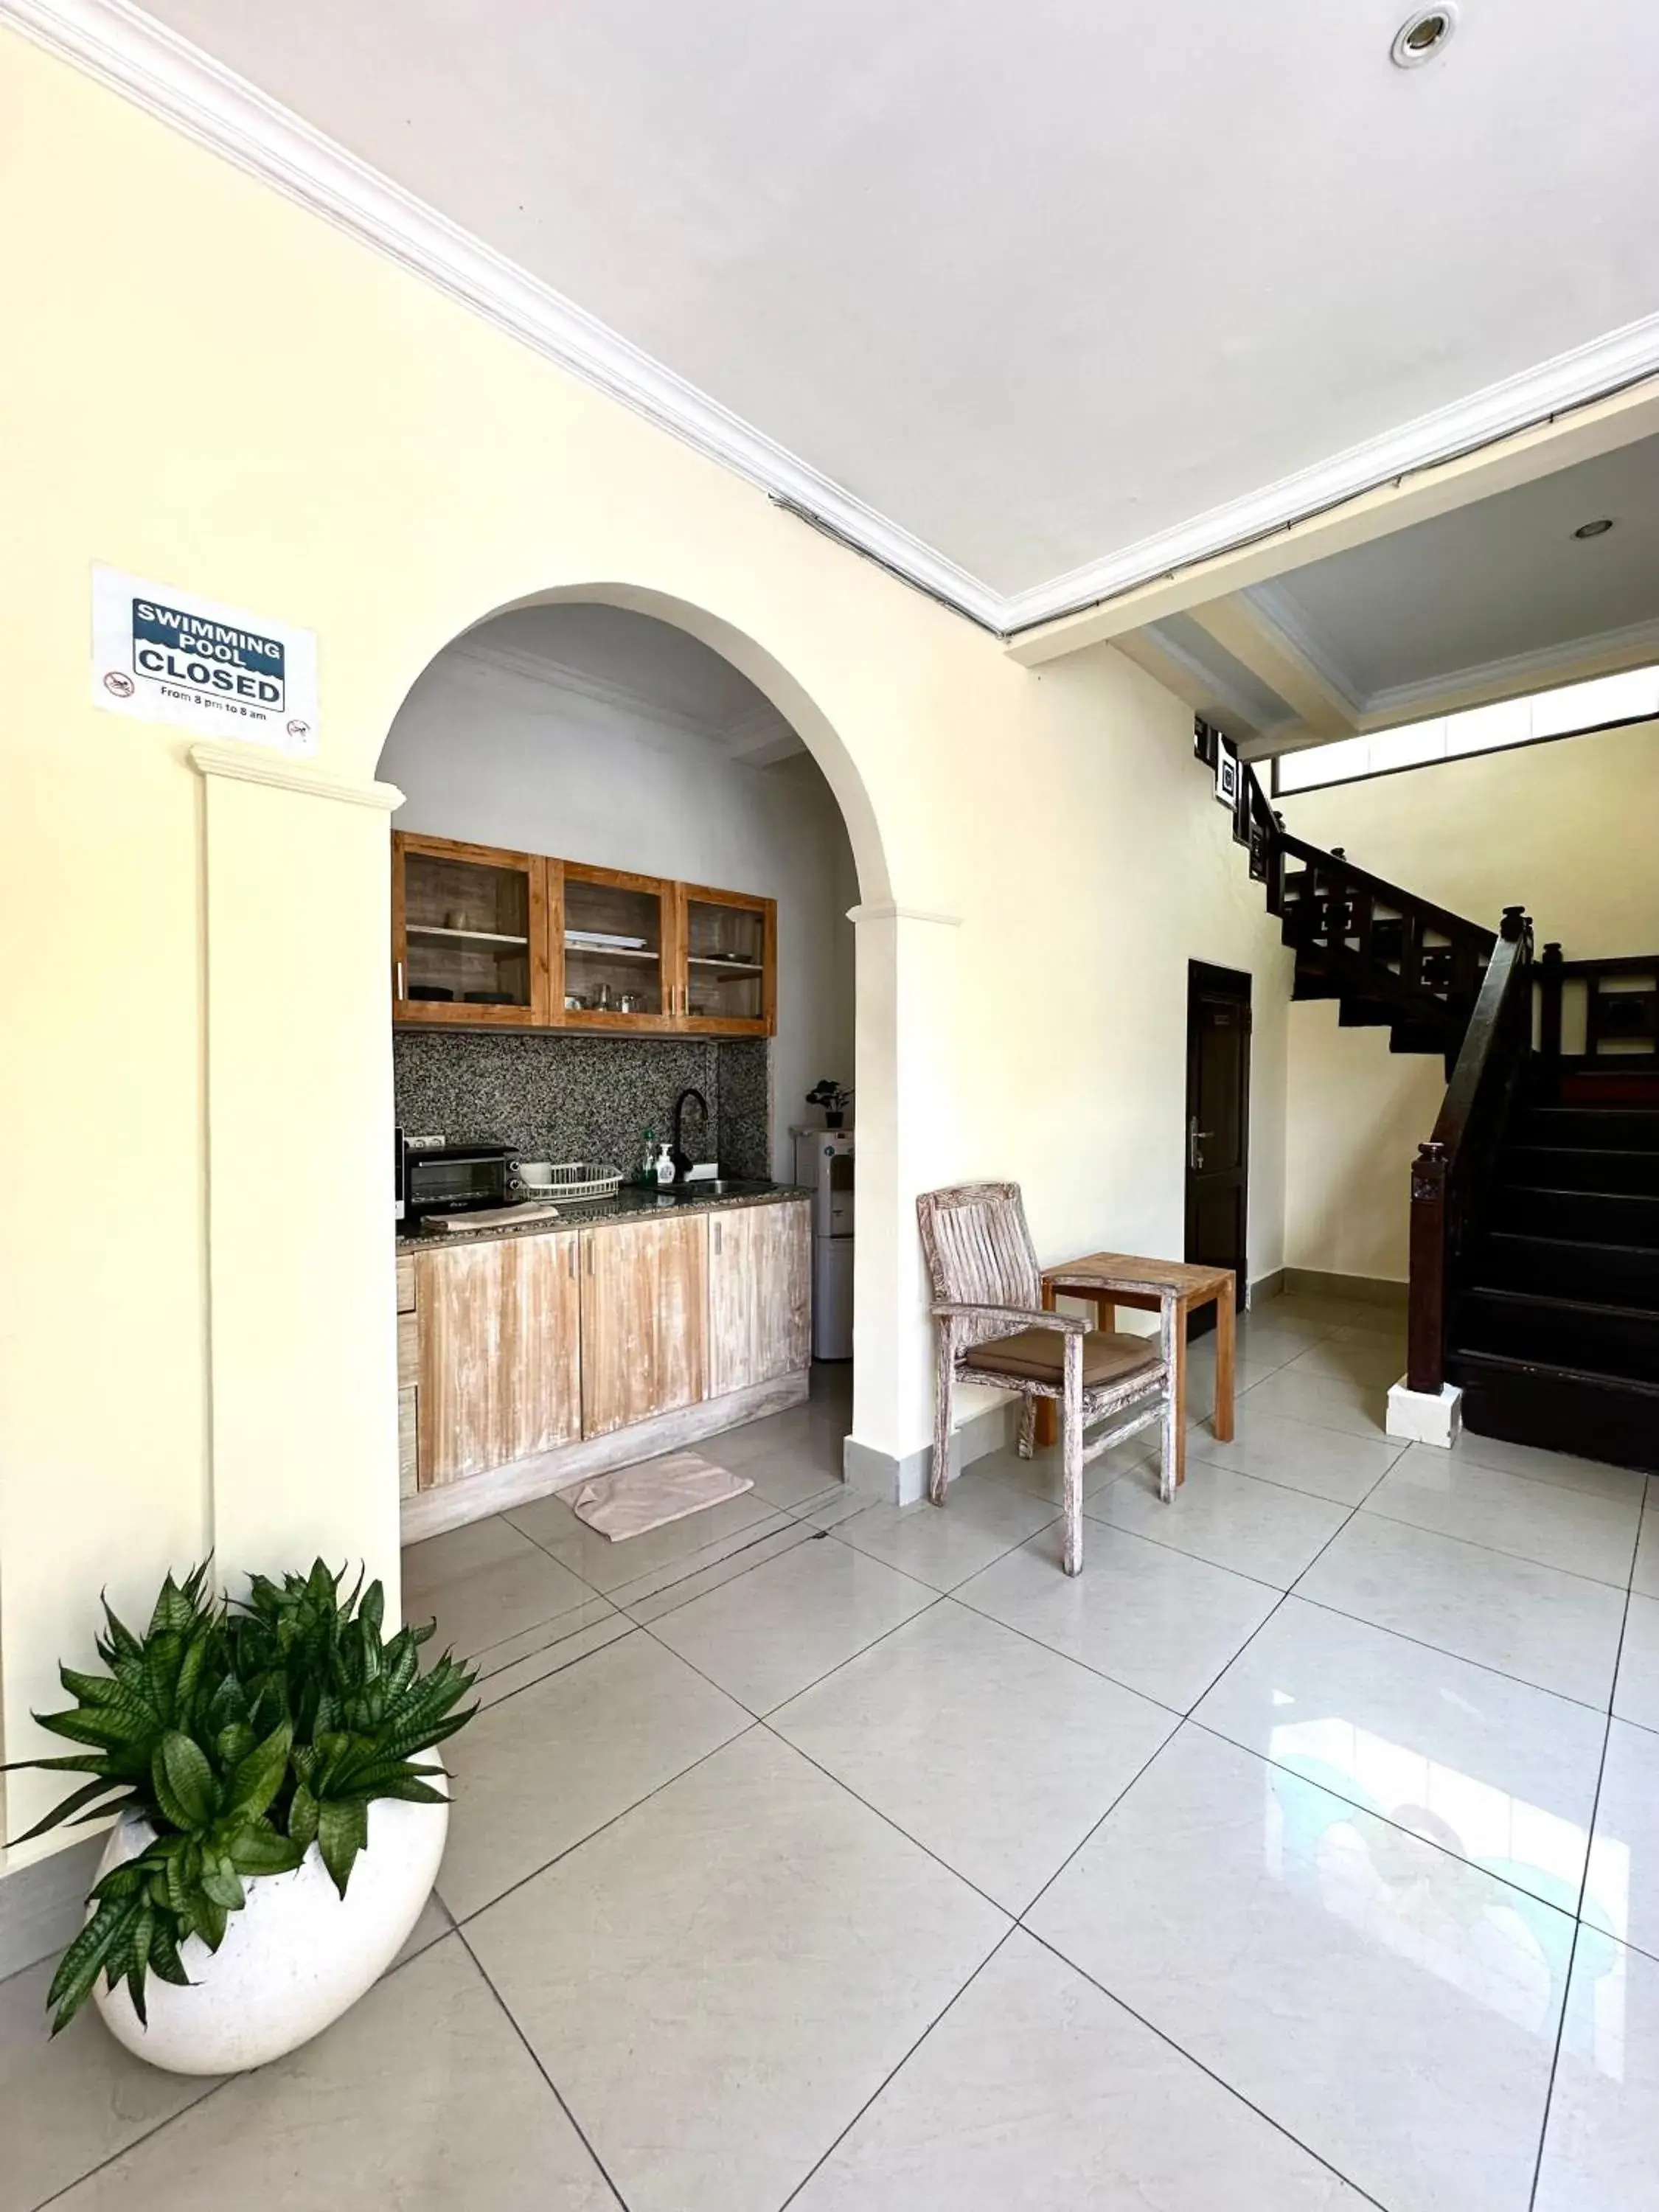 Communal kitchen in Radha Bali Hotel